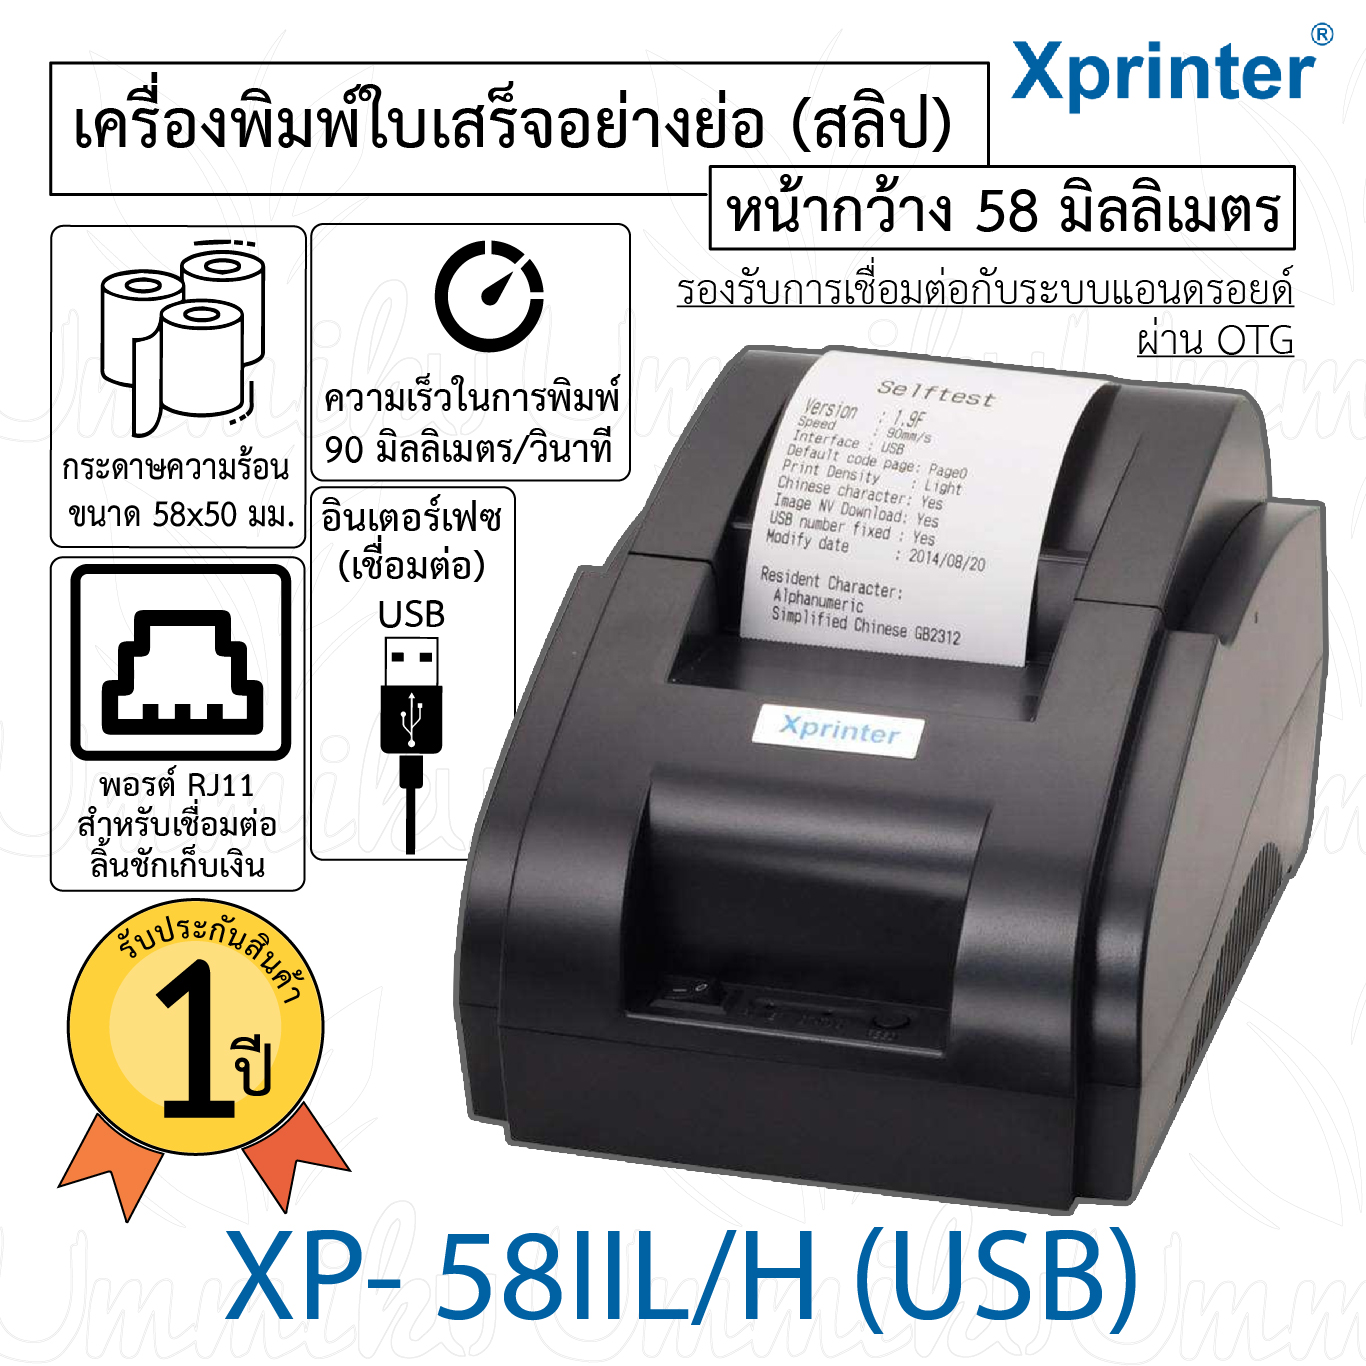 เครื่องพิมพ์ใบเสร็จ POSPRINTER รุ่น XP58mm รองรับการพิมพ์ 58 มิลลิเมเตร การเชื่อมต่อ USB (Thermal Receipt Printer Size  58 mm.)